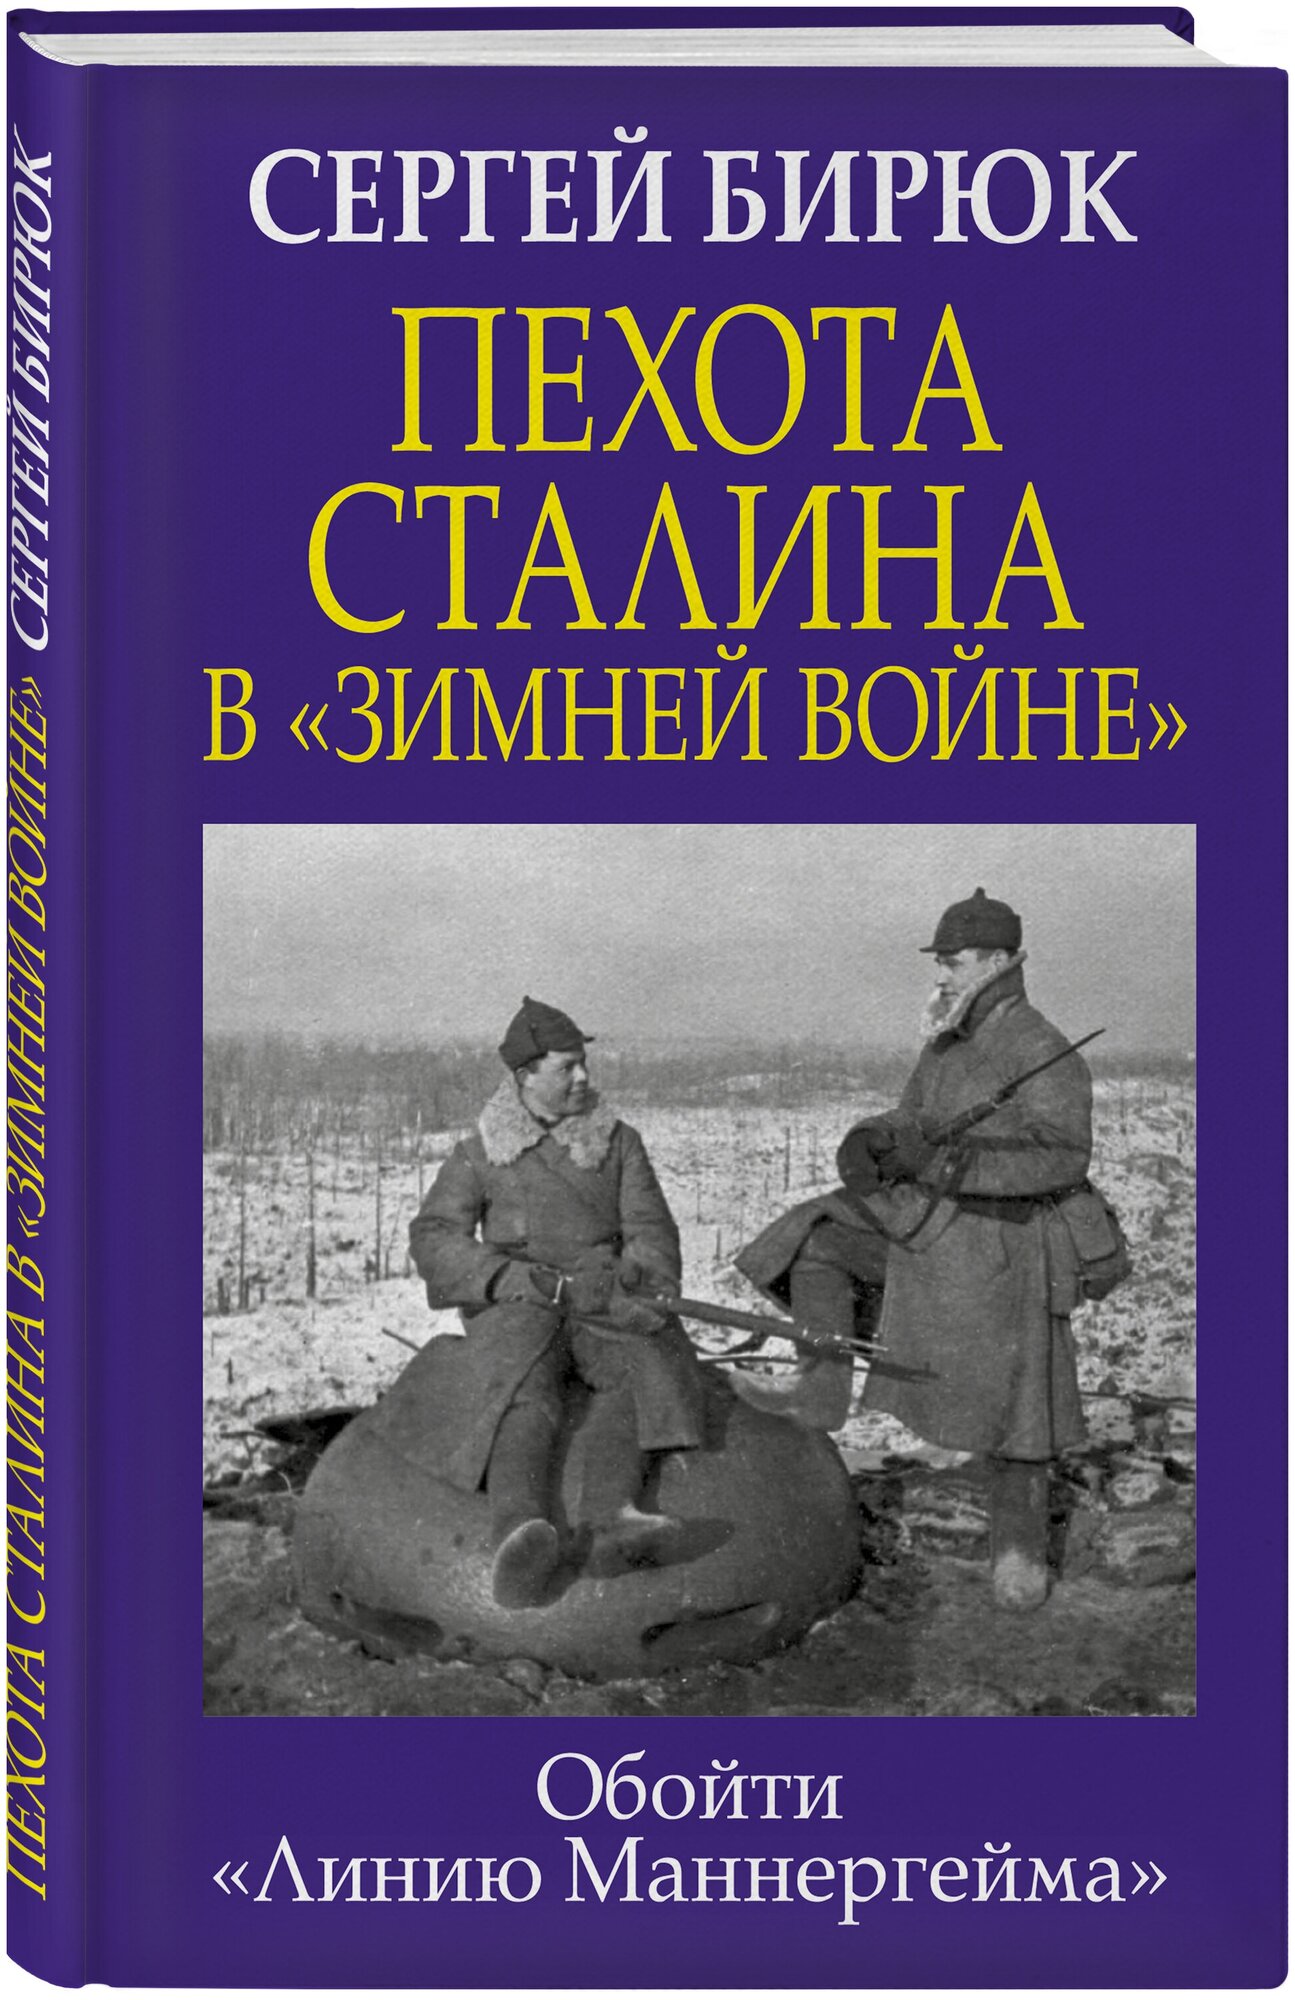 Бирюк С. Н. Пехота Сталина в «Зимней войне»: Обойти «Линию Маннергейма»